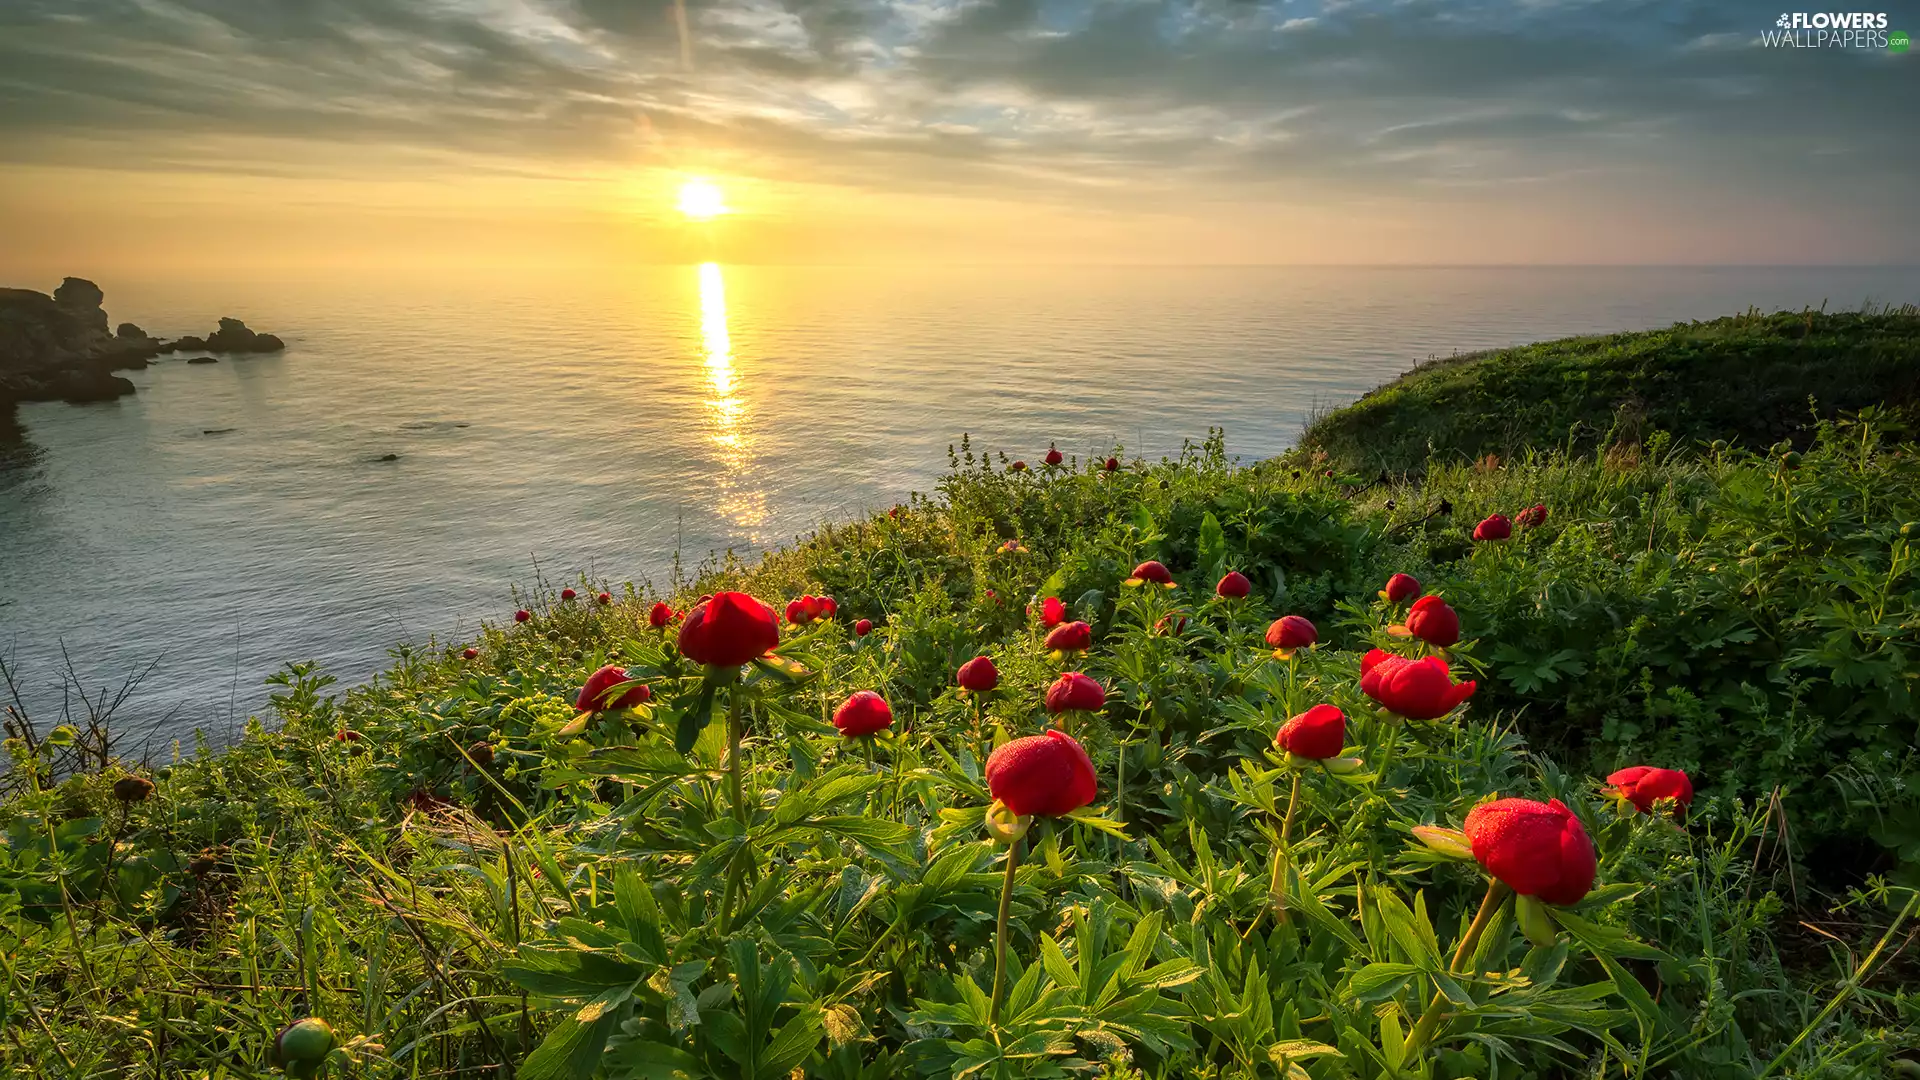 Hill, Black Sea, Peonies, Mountains, Sunrise, Flowers, Bulgaria